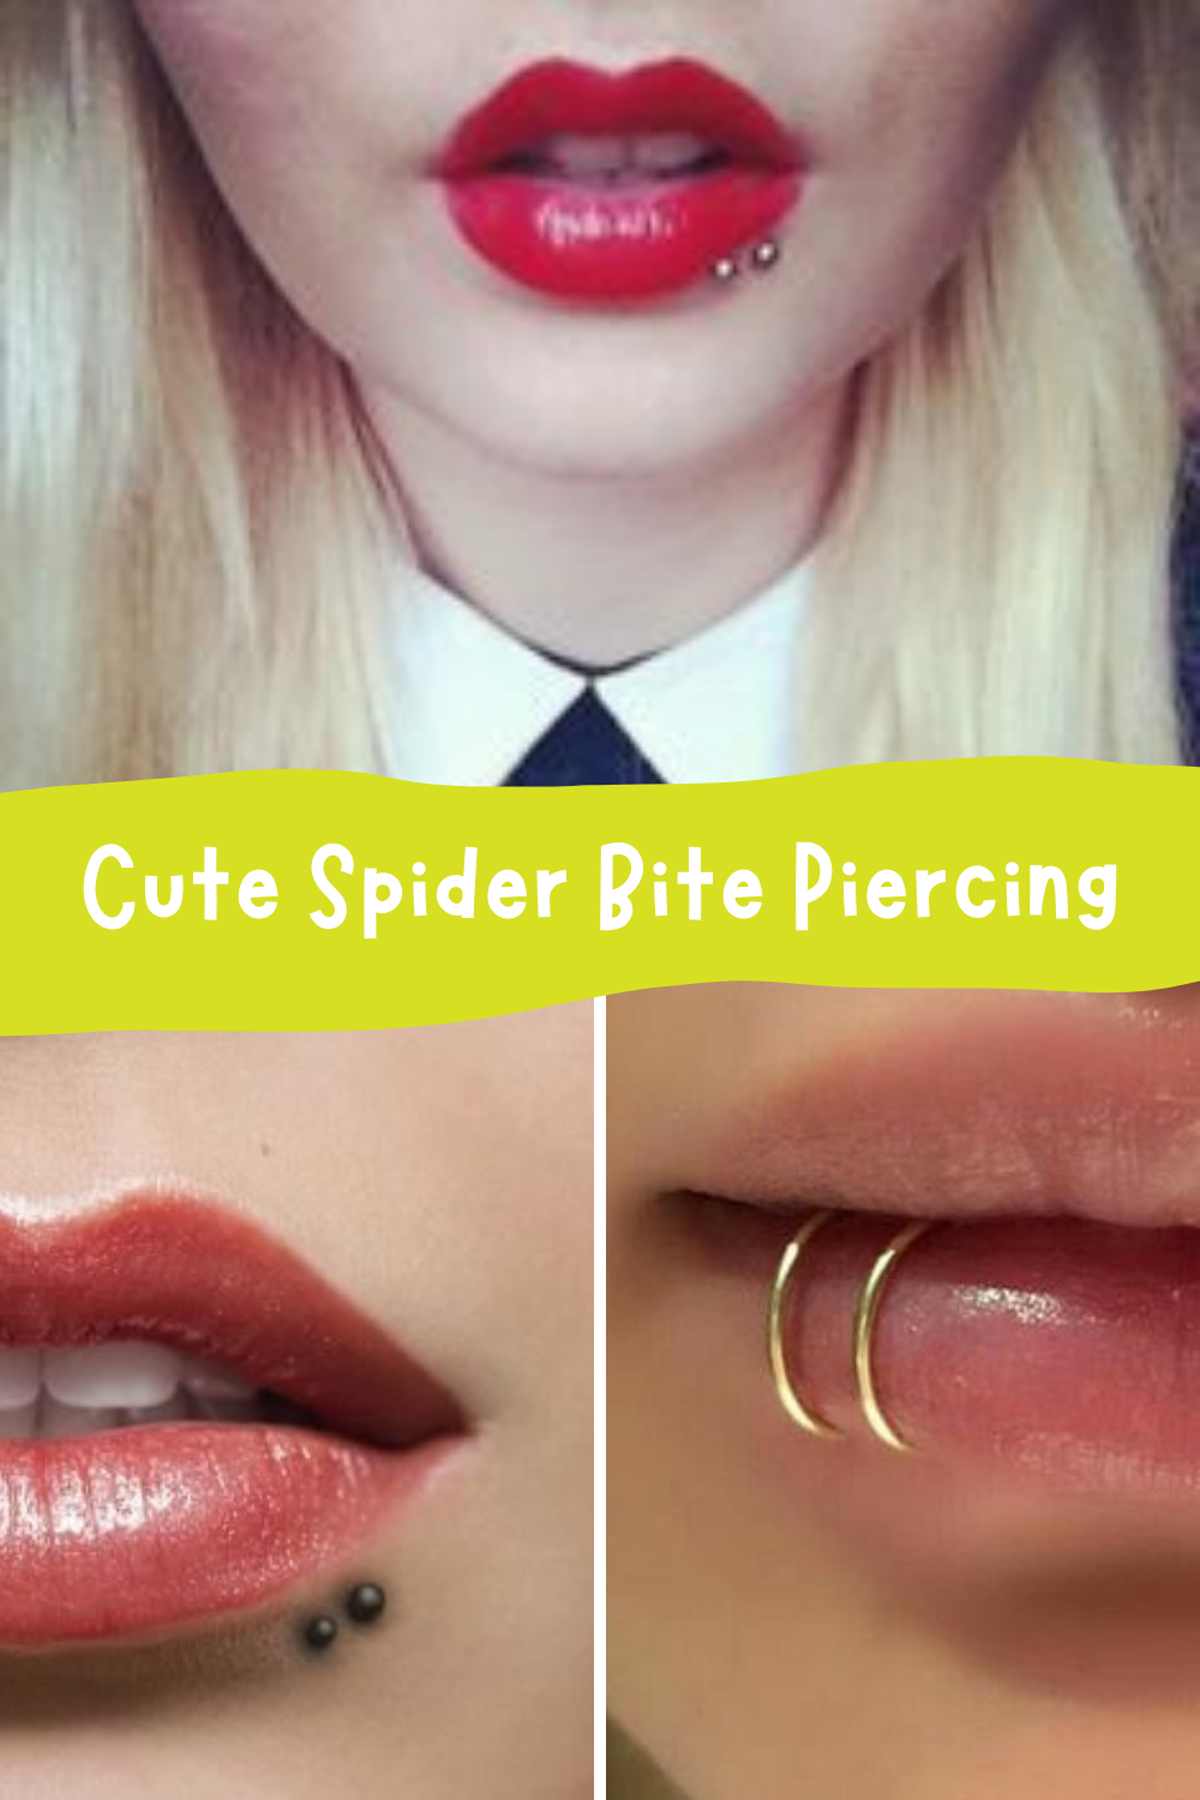 Lip Piercings